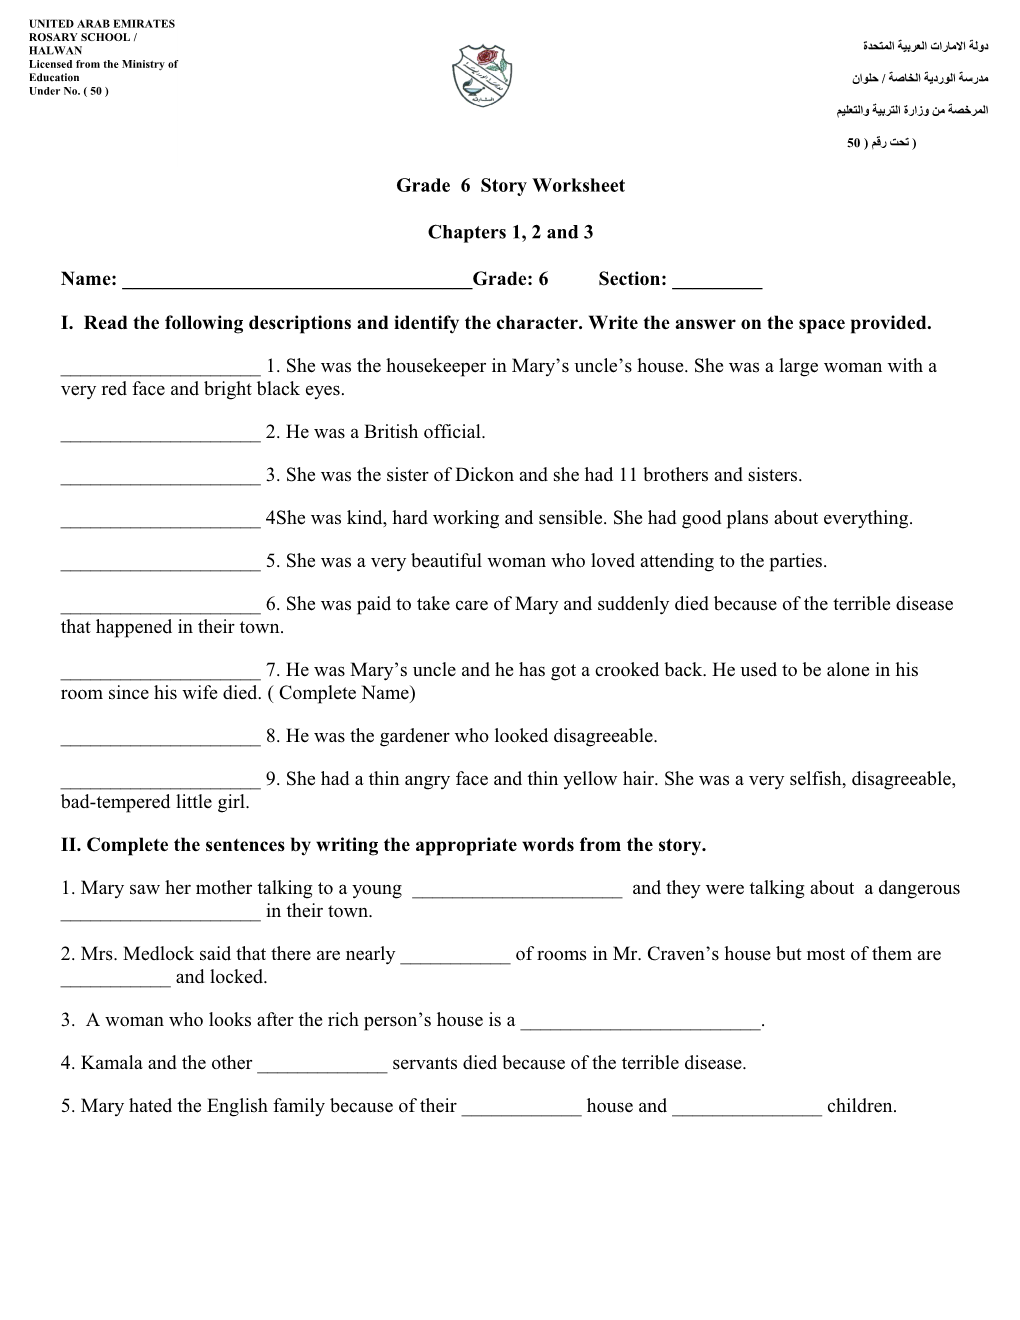 Grade 6 Story Worksheet